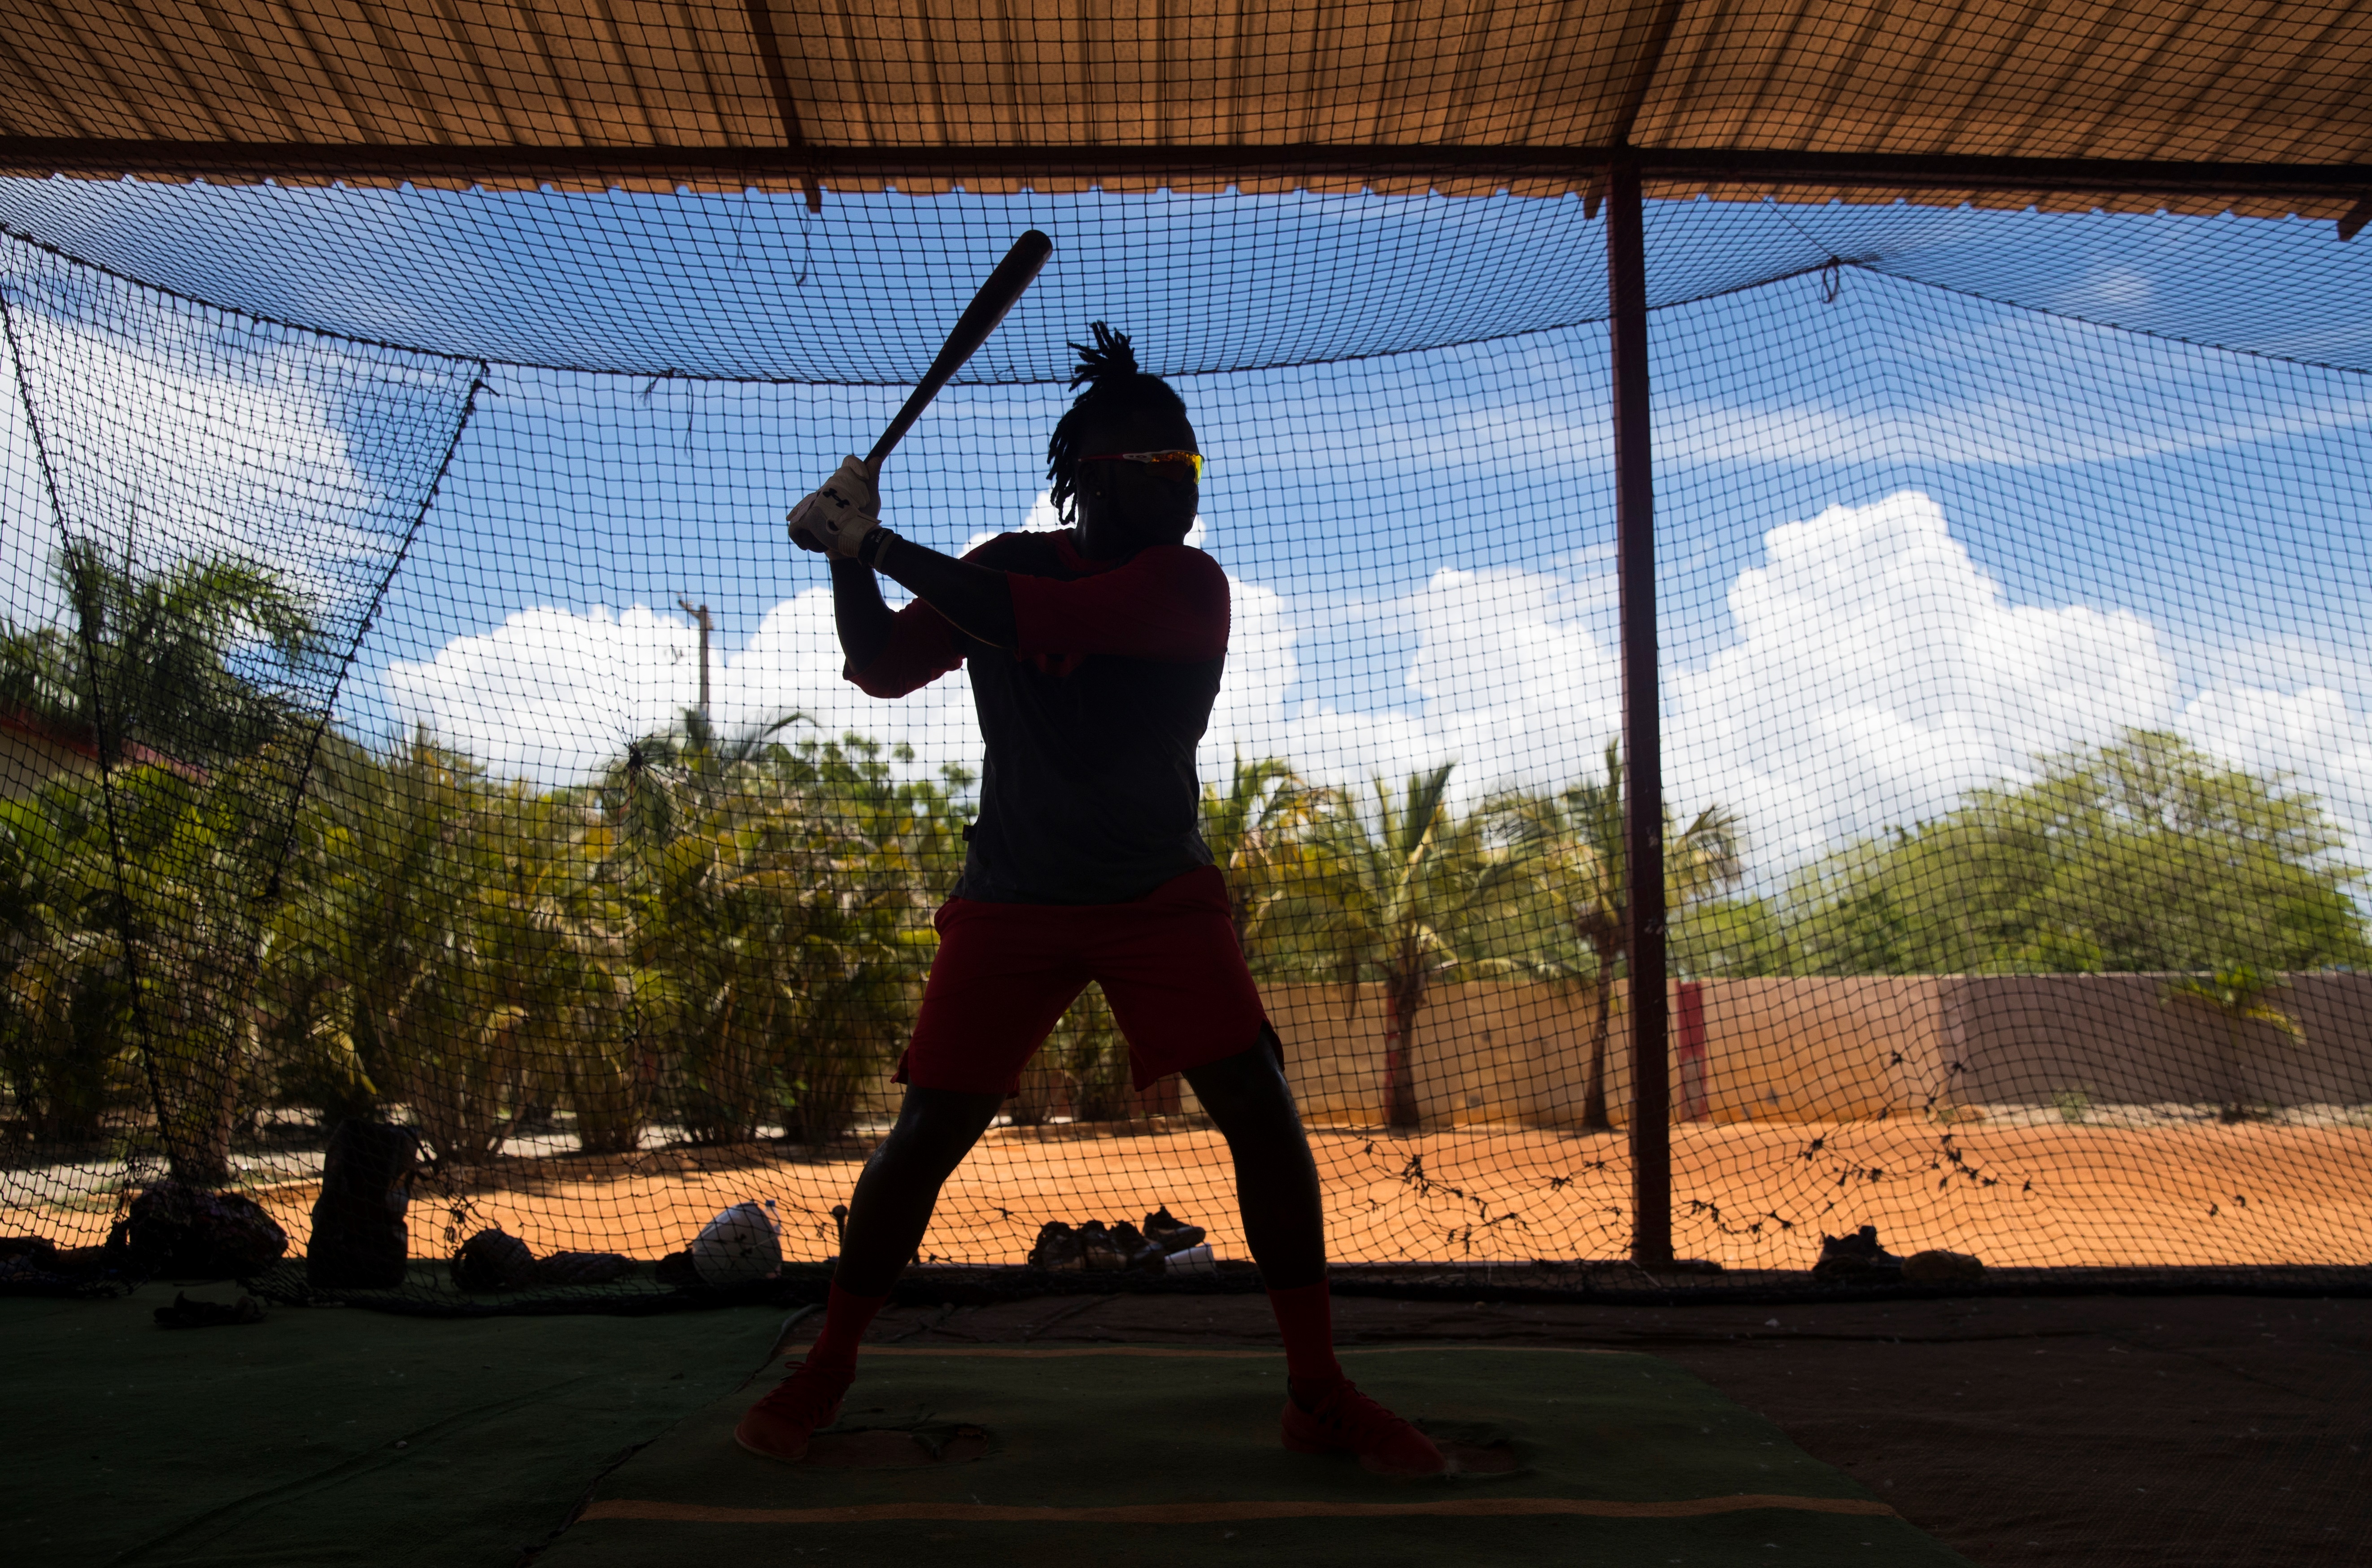 Cancelación de Ligas Menores golpea al béisbol dominicano